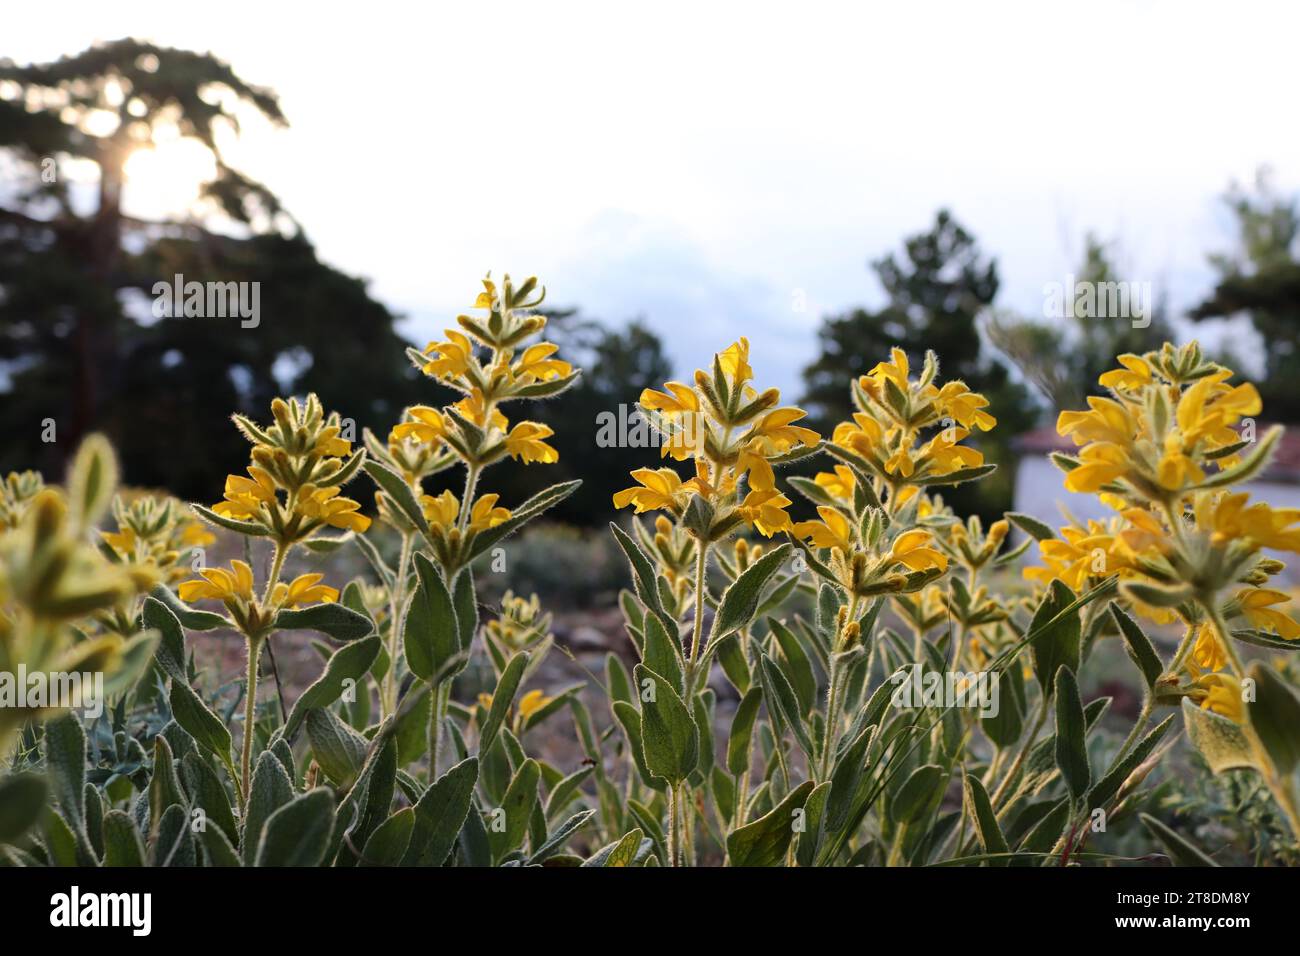 Phlomis Armenia. Yellow flowers in summer. Stock Photo